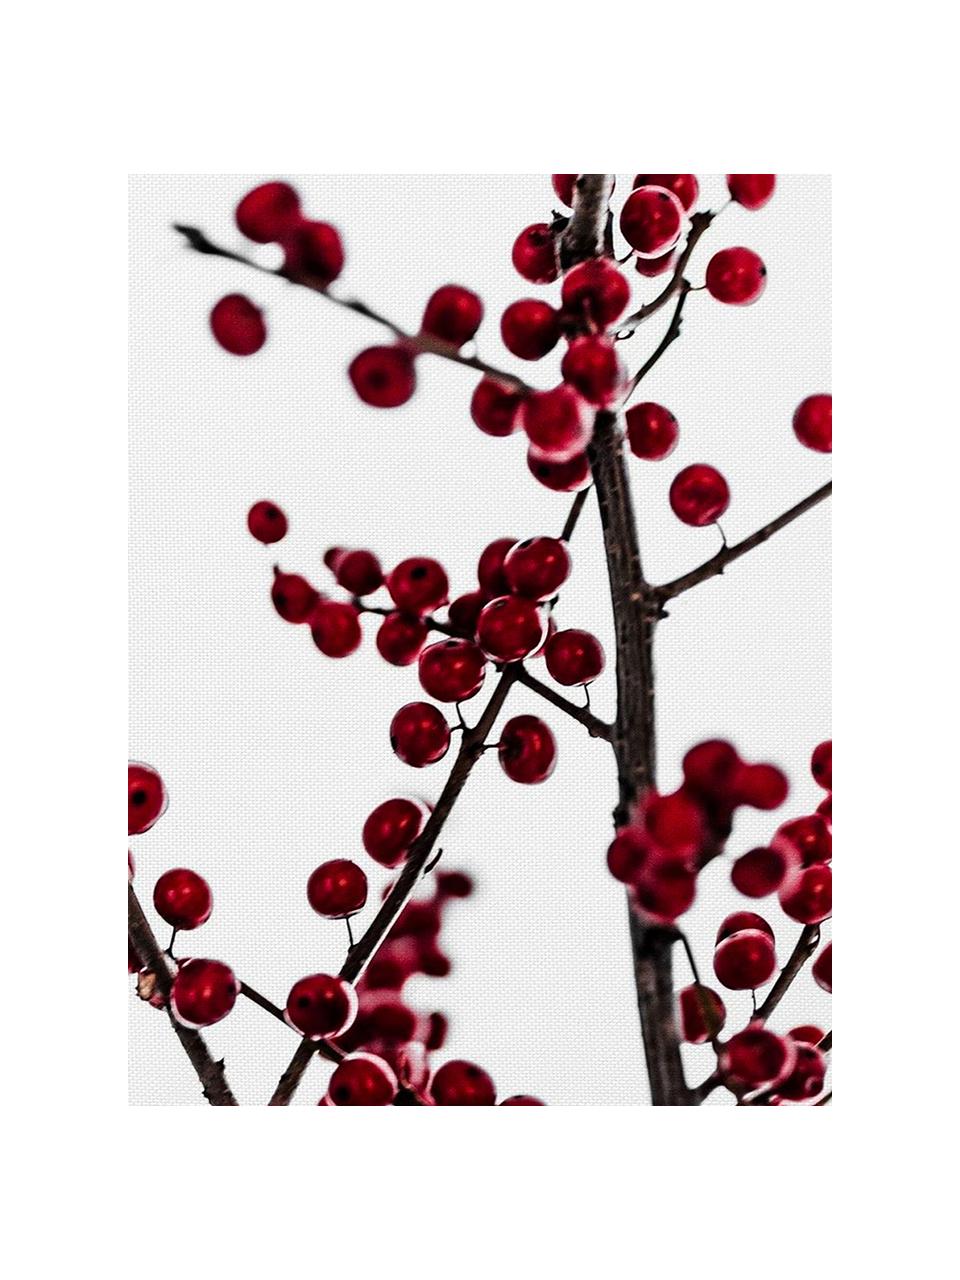 Stoffservietten Red Berries, 4 Stück, Baumwolle, Weiß, Rot, Schwarz, 40 x 40 cm